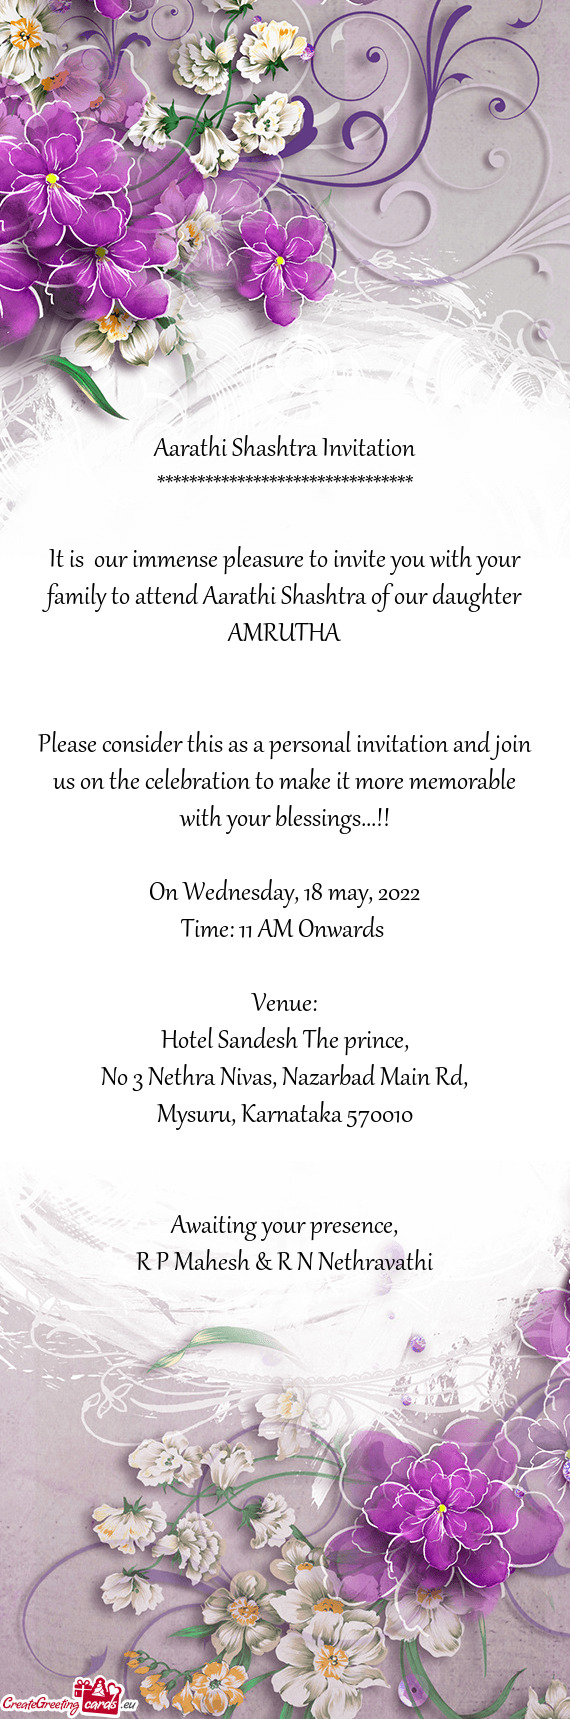 Aarathi Shashtra Invitation